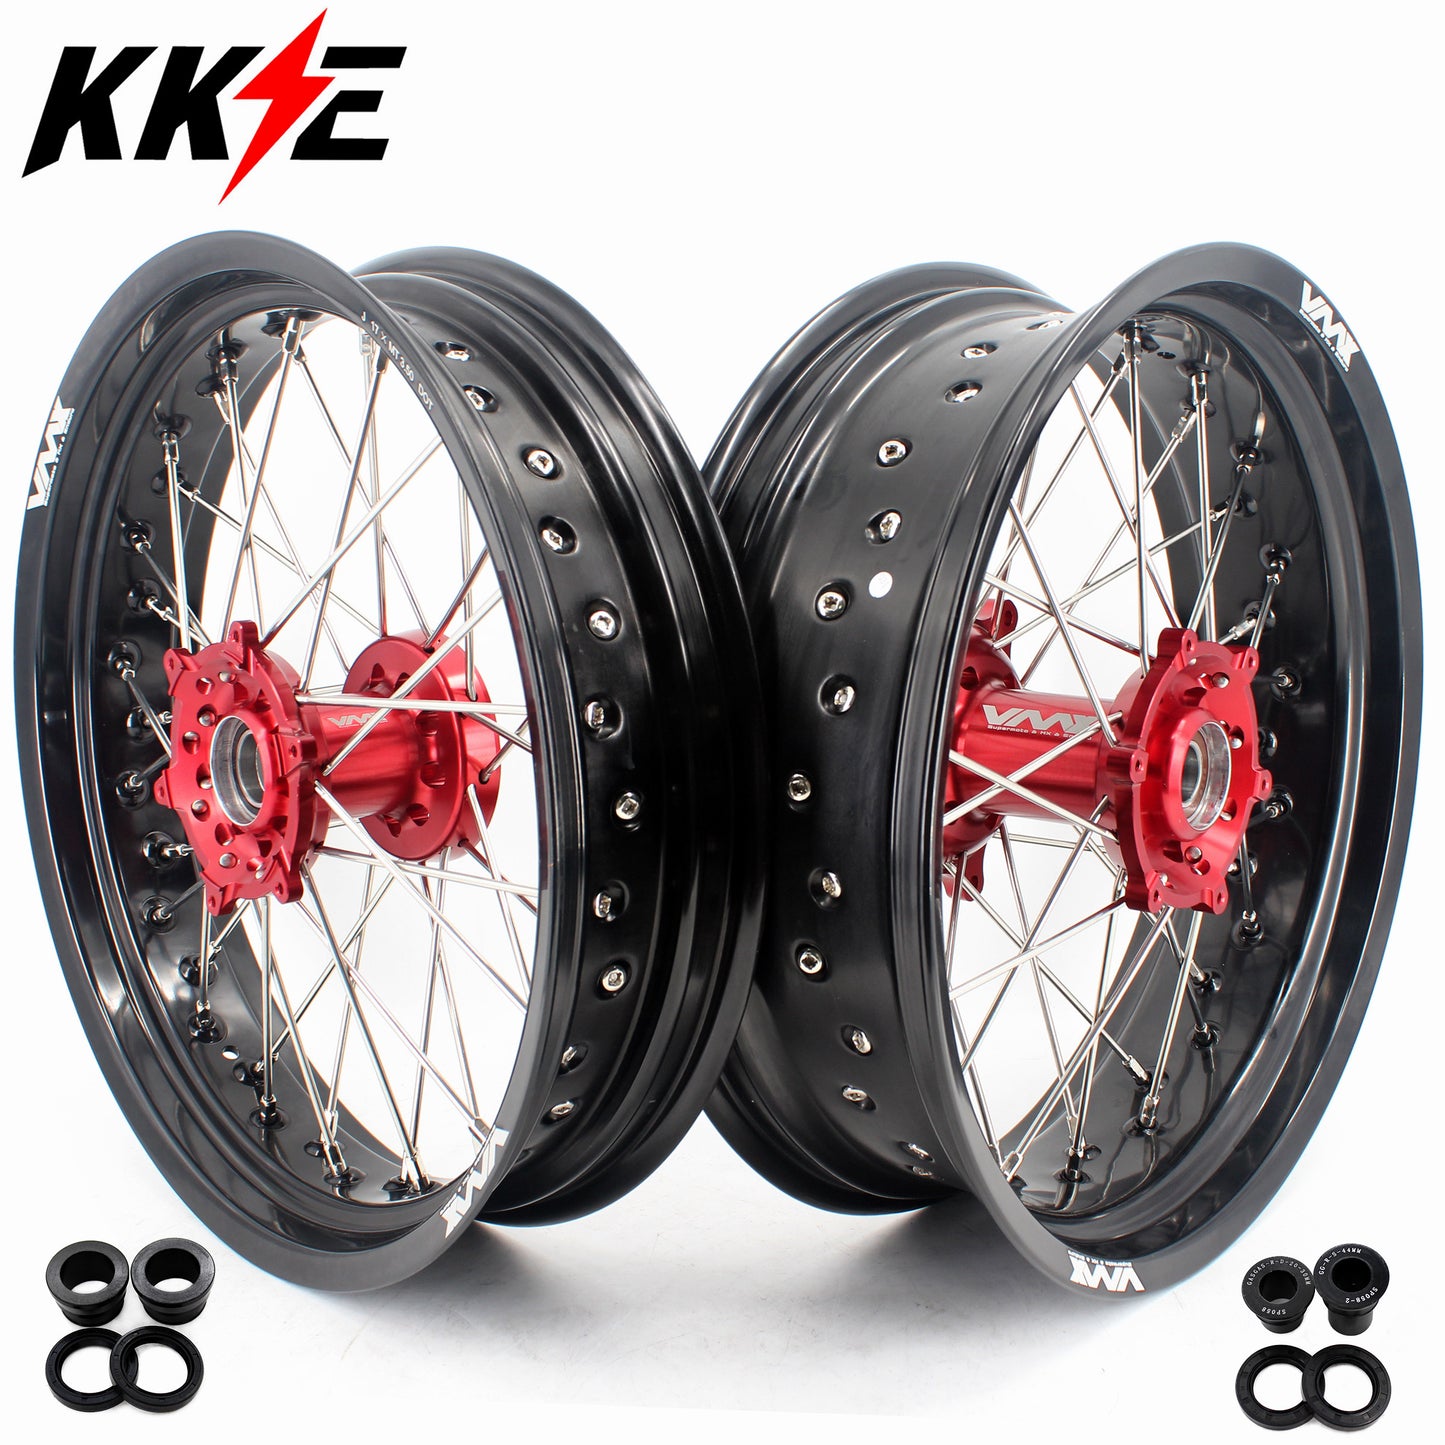 KKE 3.5/4.25*17" CNC Supermoto Wheels Rims Set For Gas Gas EC 250/300 2004-2017